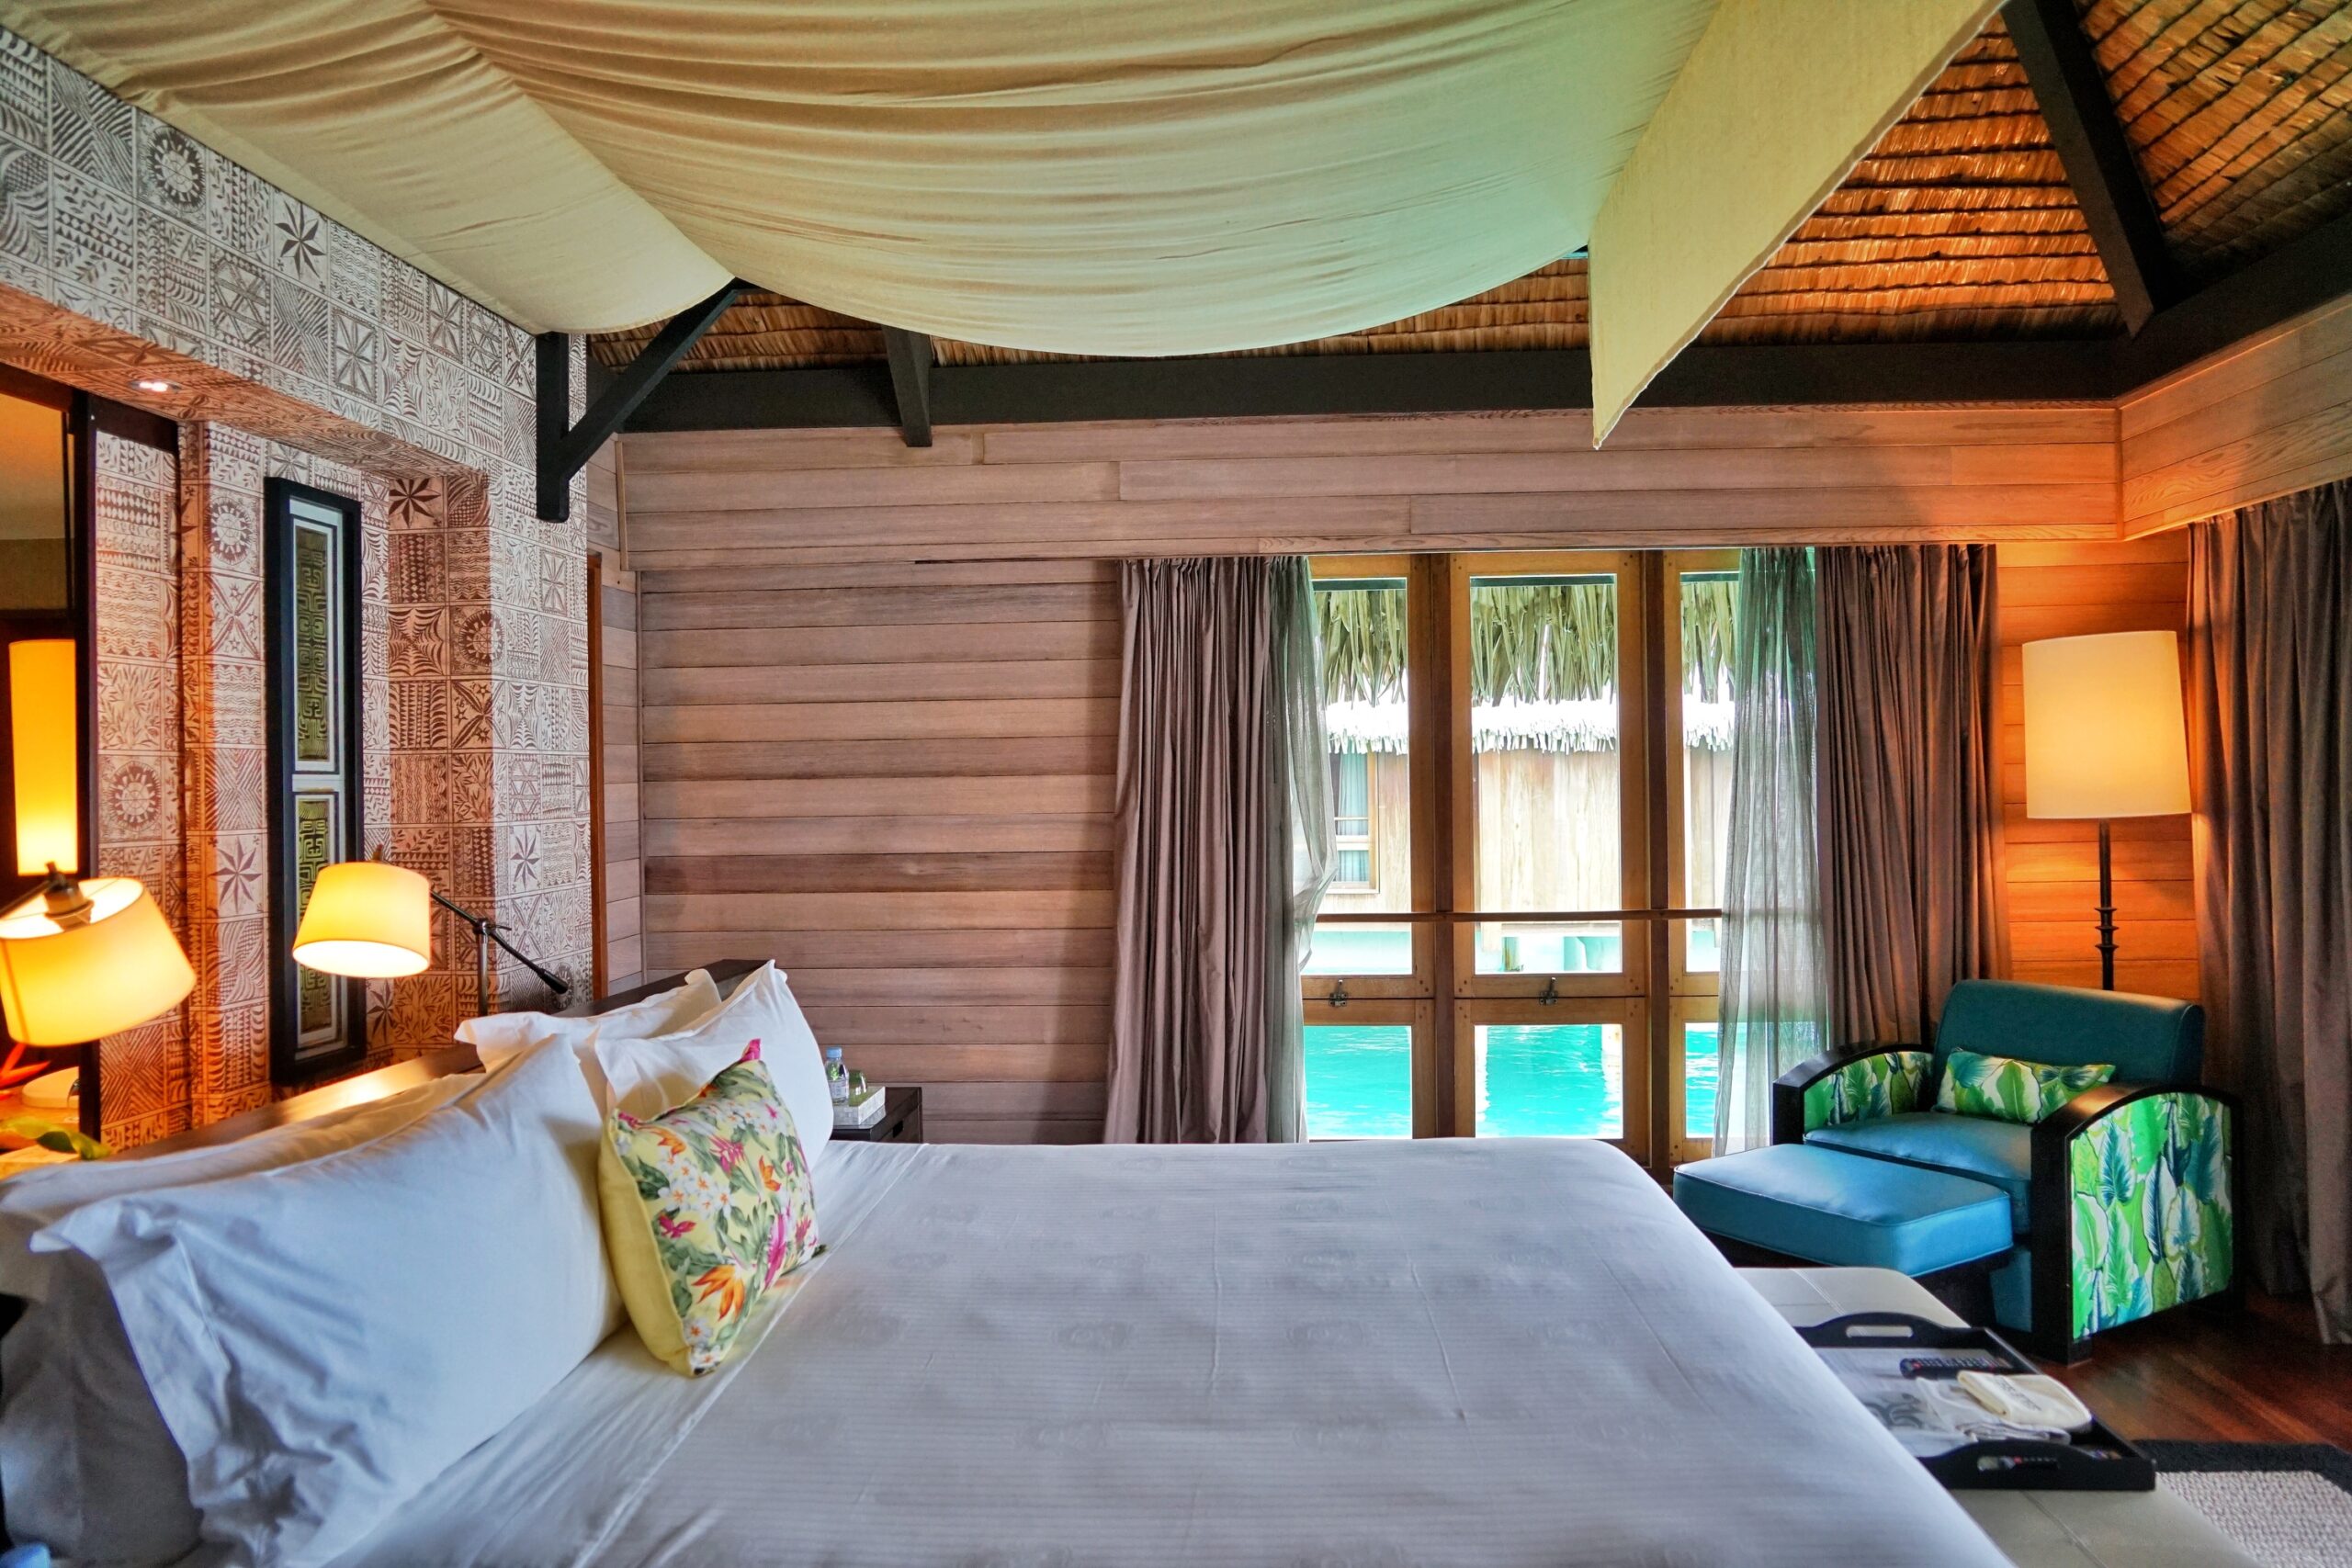 The St. Régis Bora Bora Resort